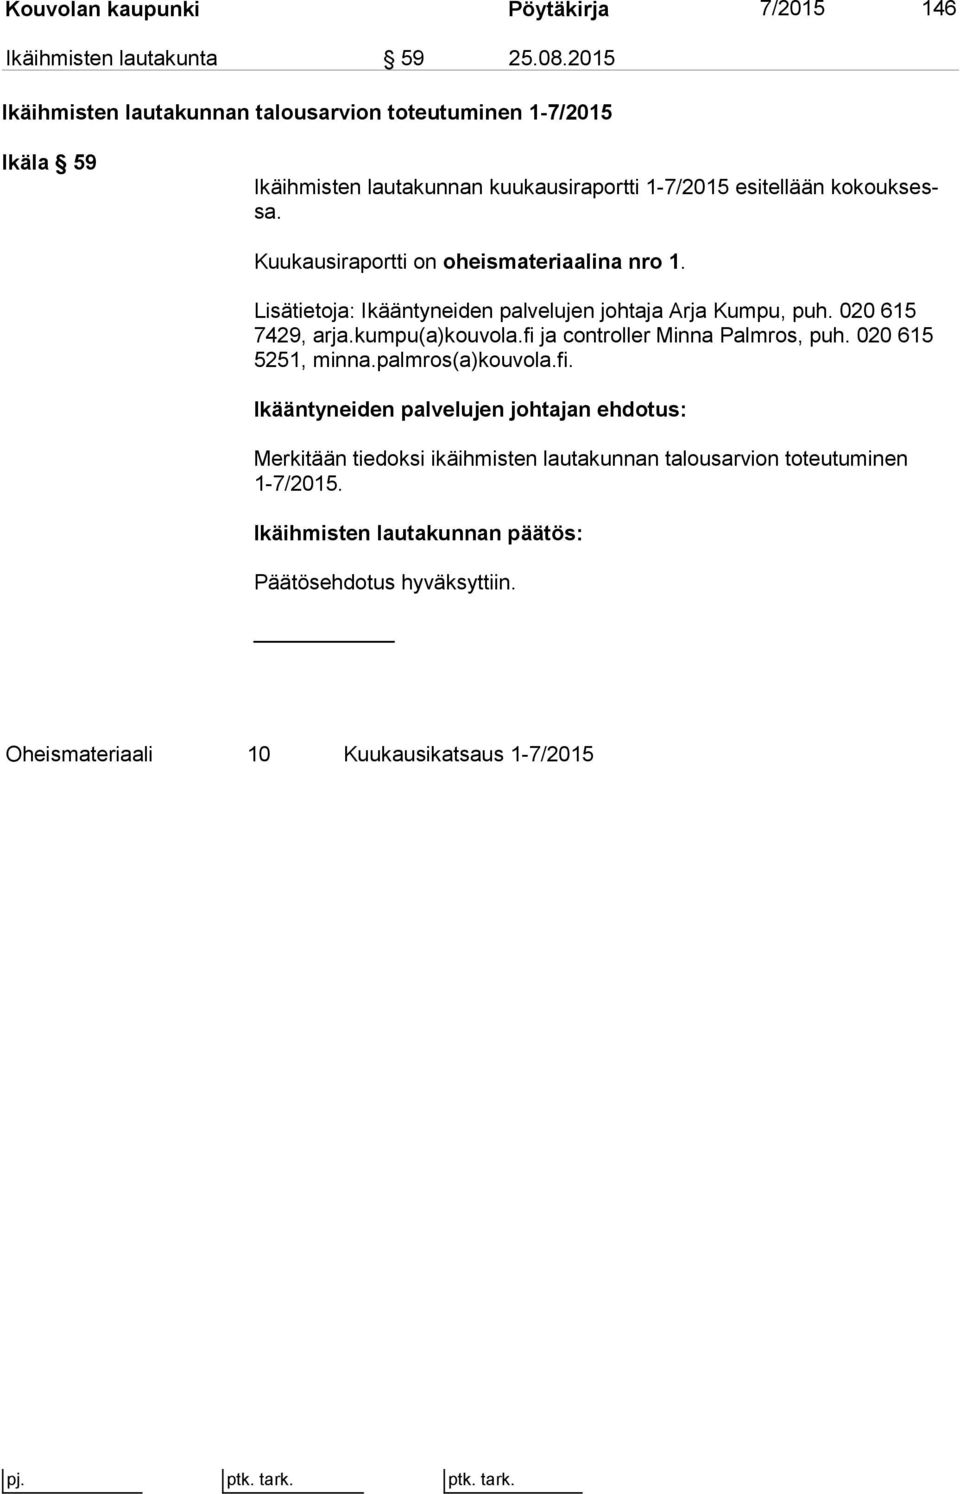 Kuukausiraportti on oheismateriaalina nro 1. Lisätietoja: Ikääntyneiden palvelujen johtaja Arja Kumpu, puh. 020 615 7429, arja.kumpu(a)kouvola.